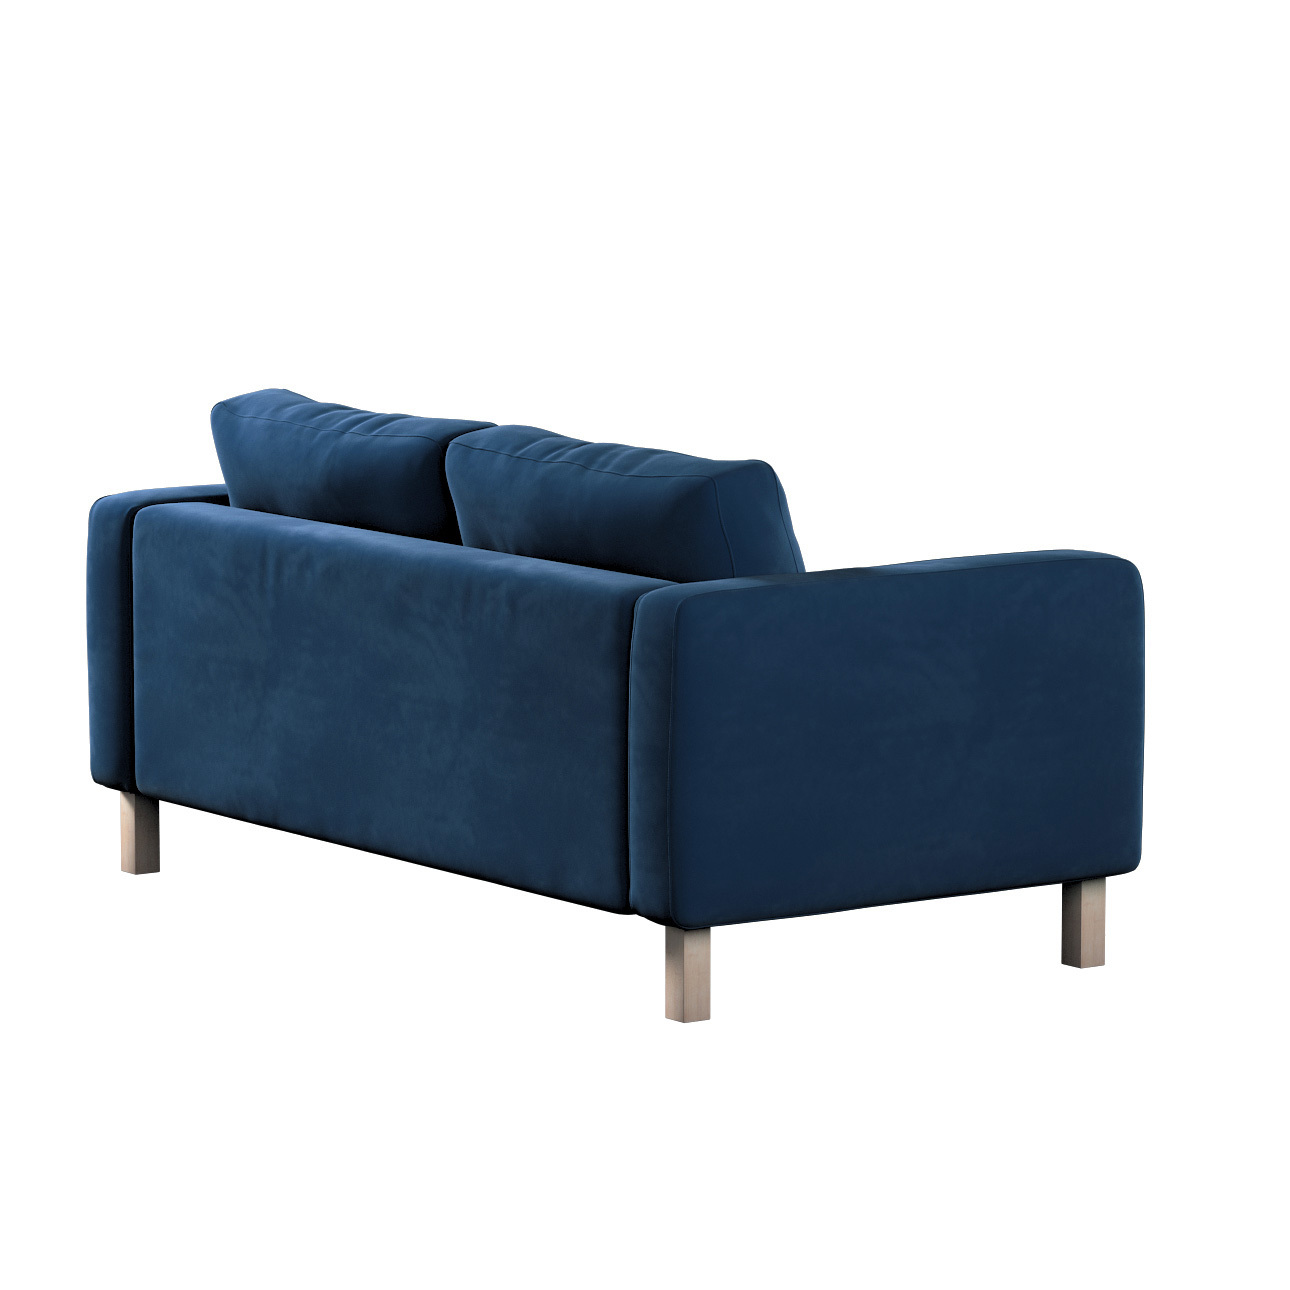 Bezug für Karlstad 2-Sitzer Sofa nicht ausklappbar, dunkelblau, Sofahusse, günstig online kaufen